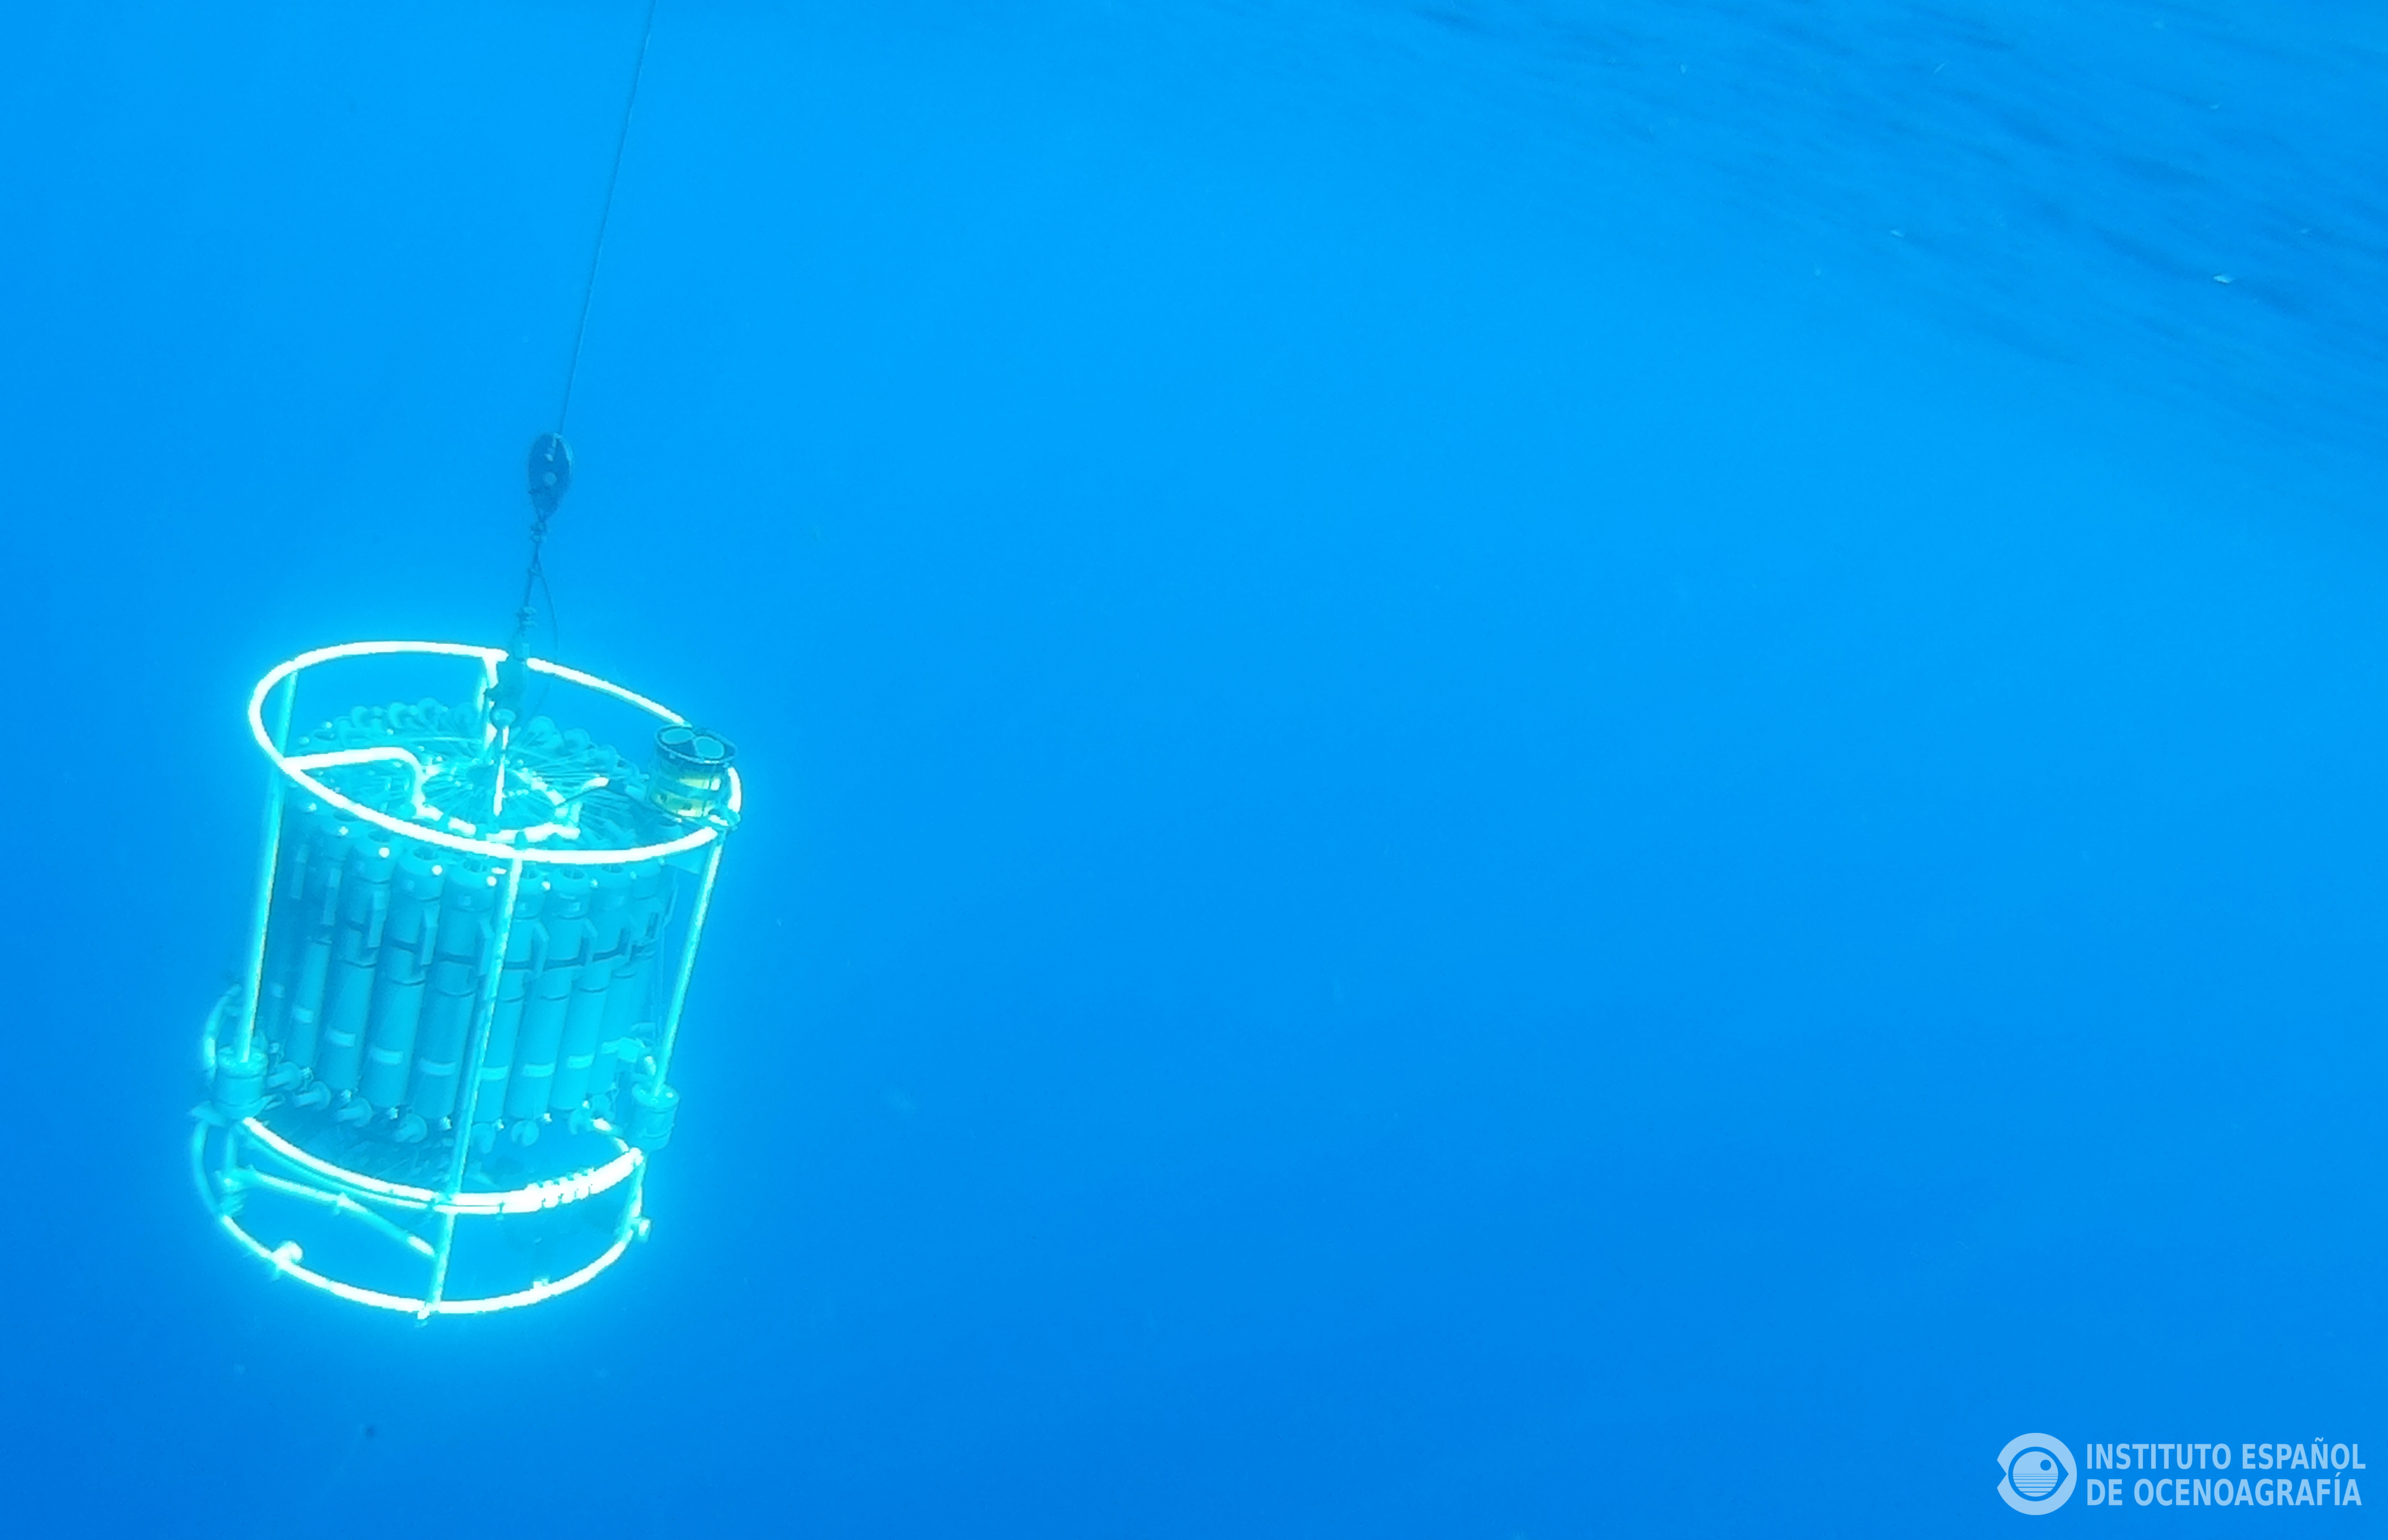 La roseta oceanográfica, trabajando en las profundidades. Imagen: IEO